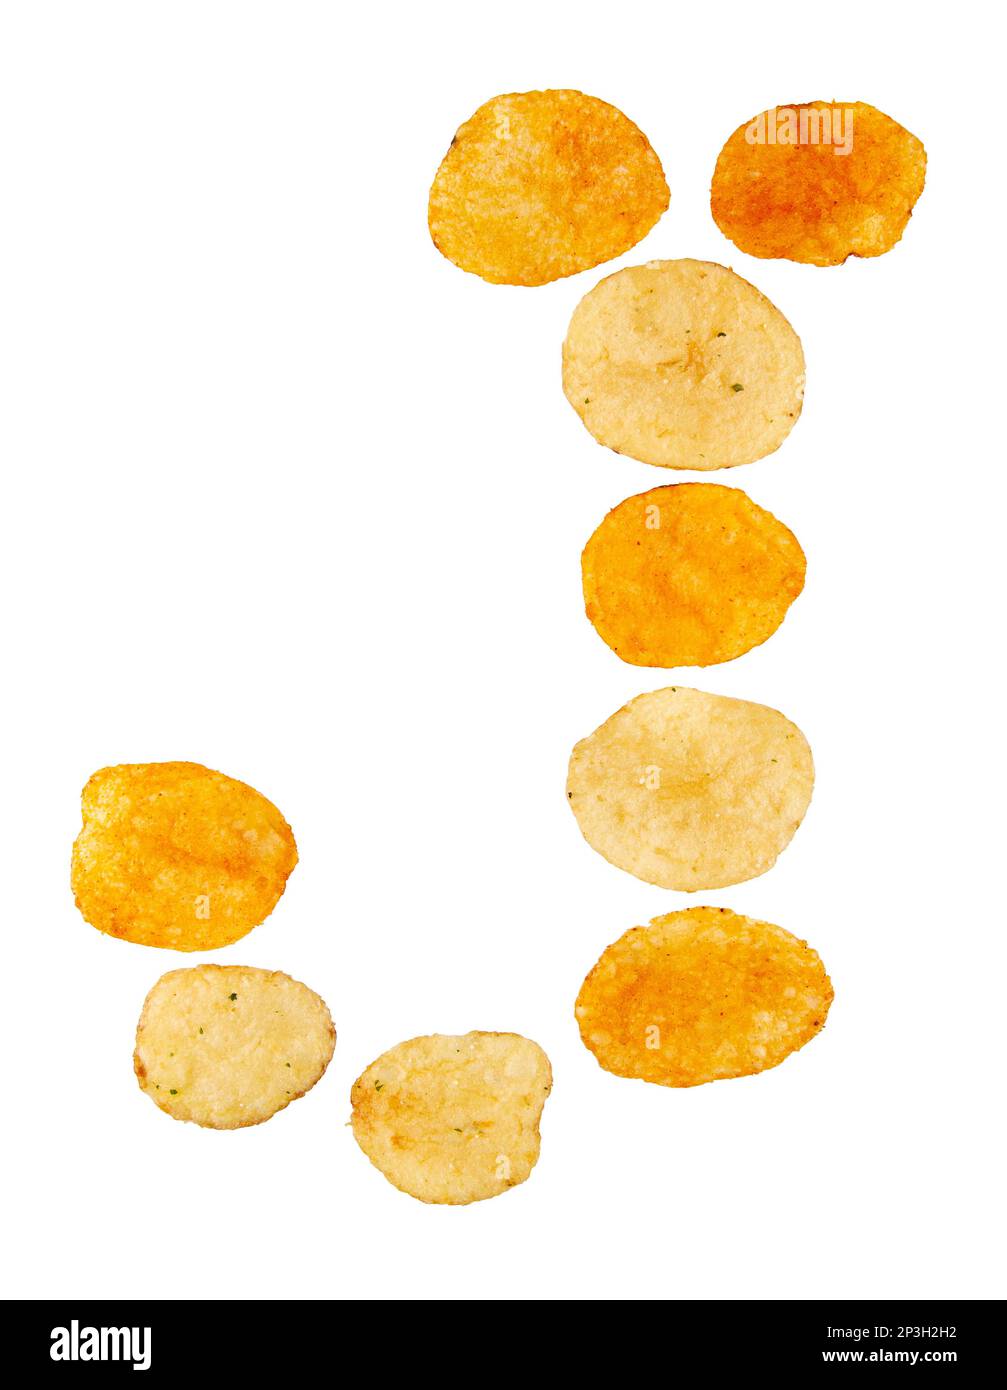 Lettre J faite de chips de pomme de terre et isolée sur fond blanc. Concept de l'alphabet alimentaire. Une lettre de l'ensemble de police de puce de pomme de terre facile à empiler. Banque D'Images